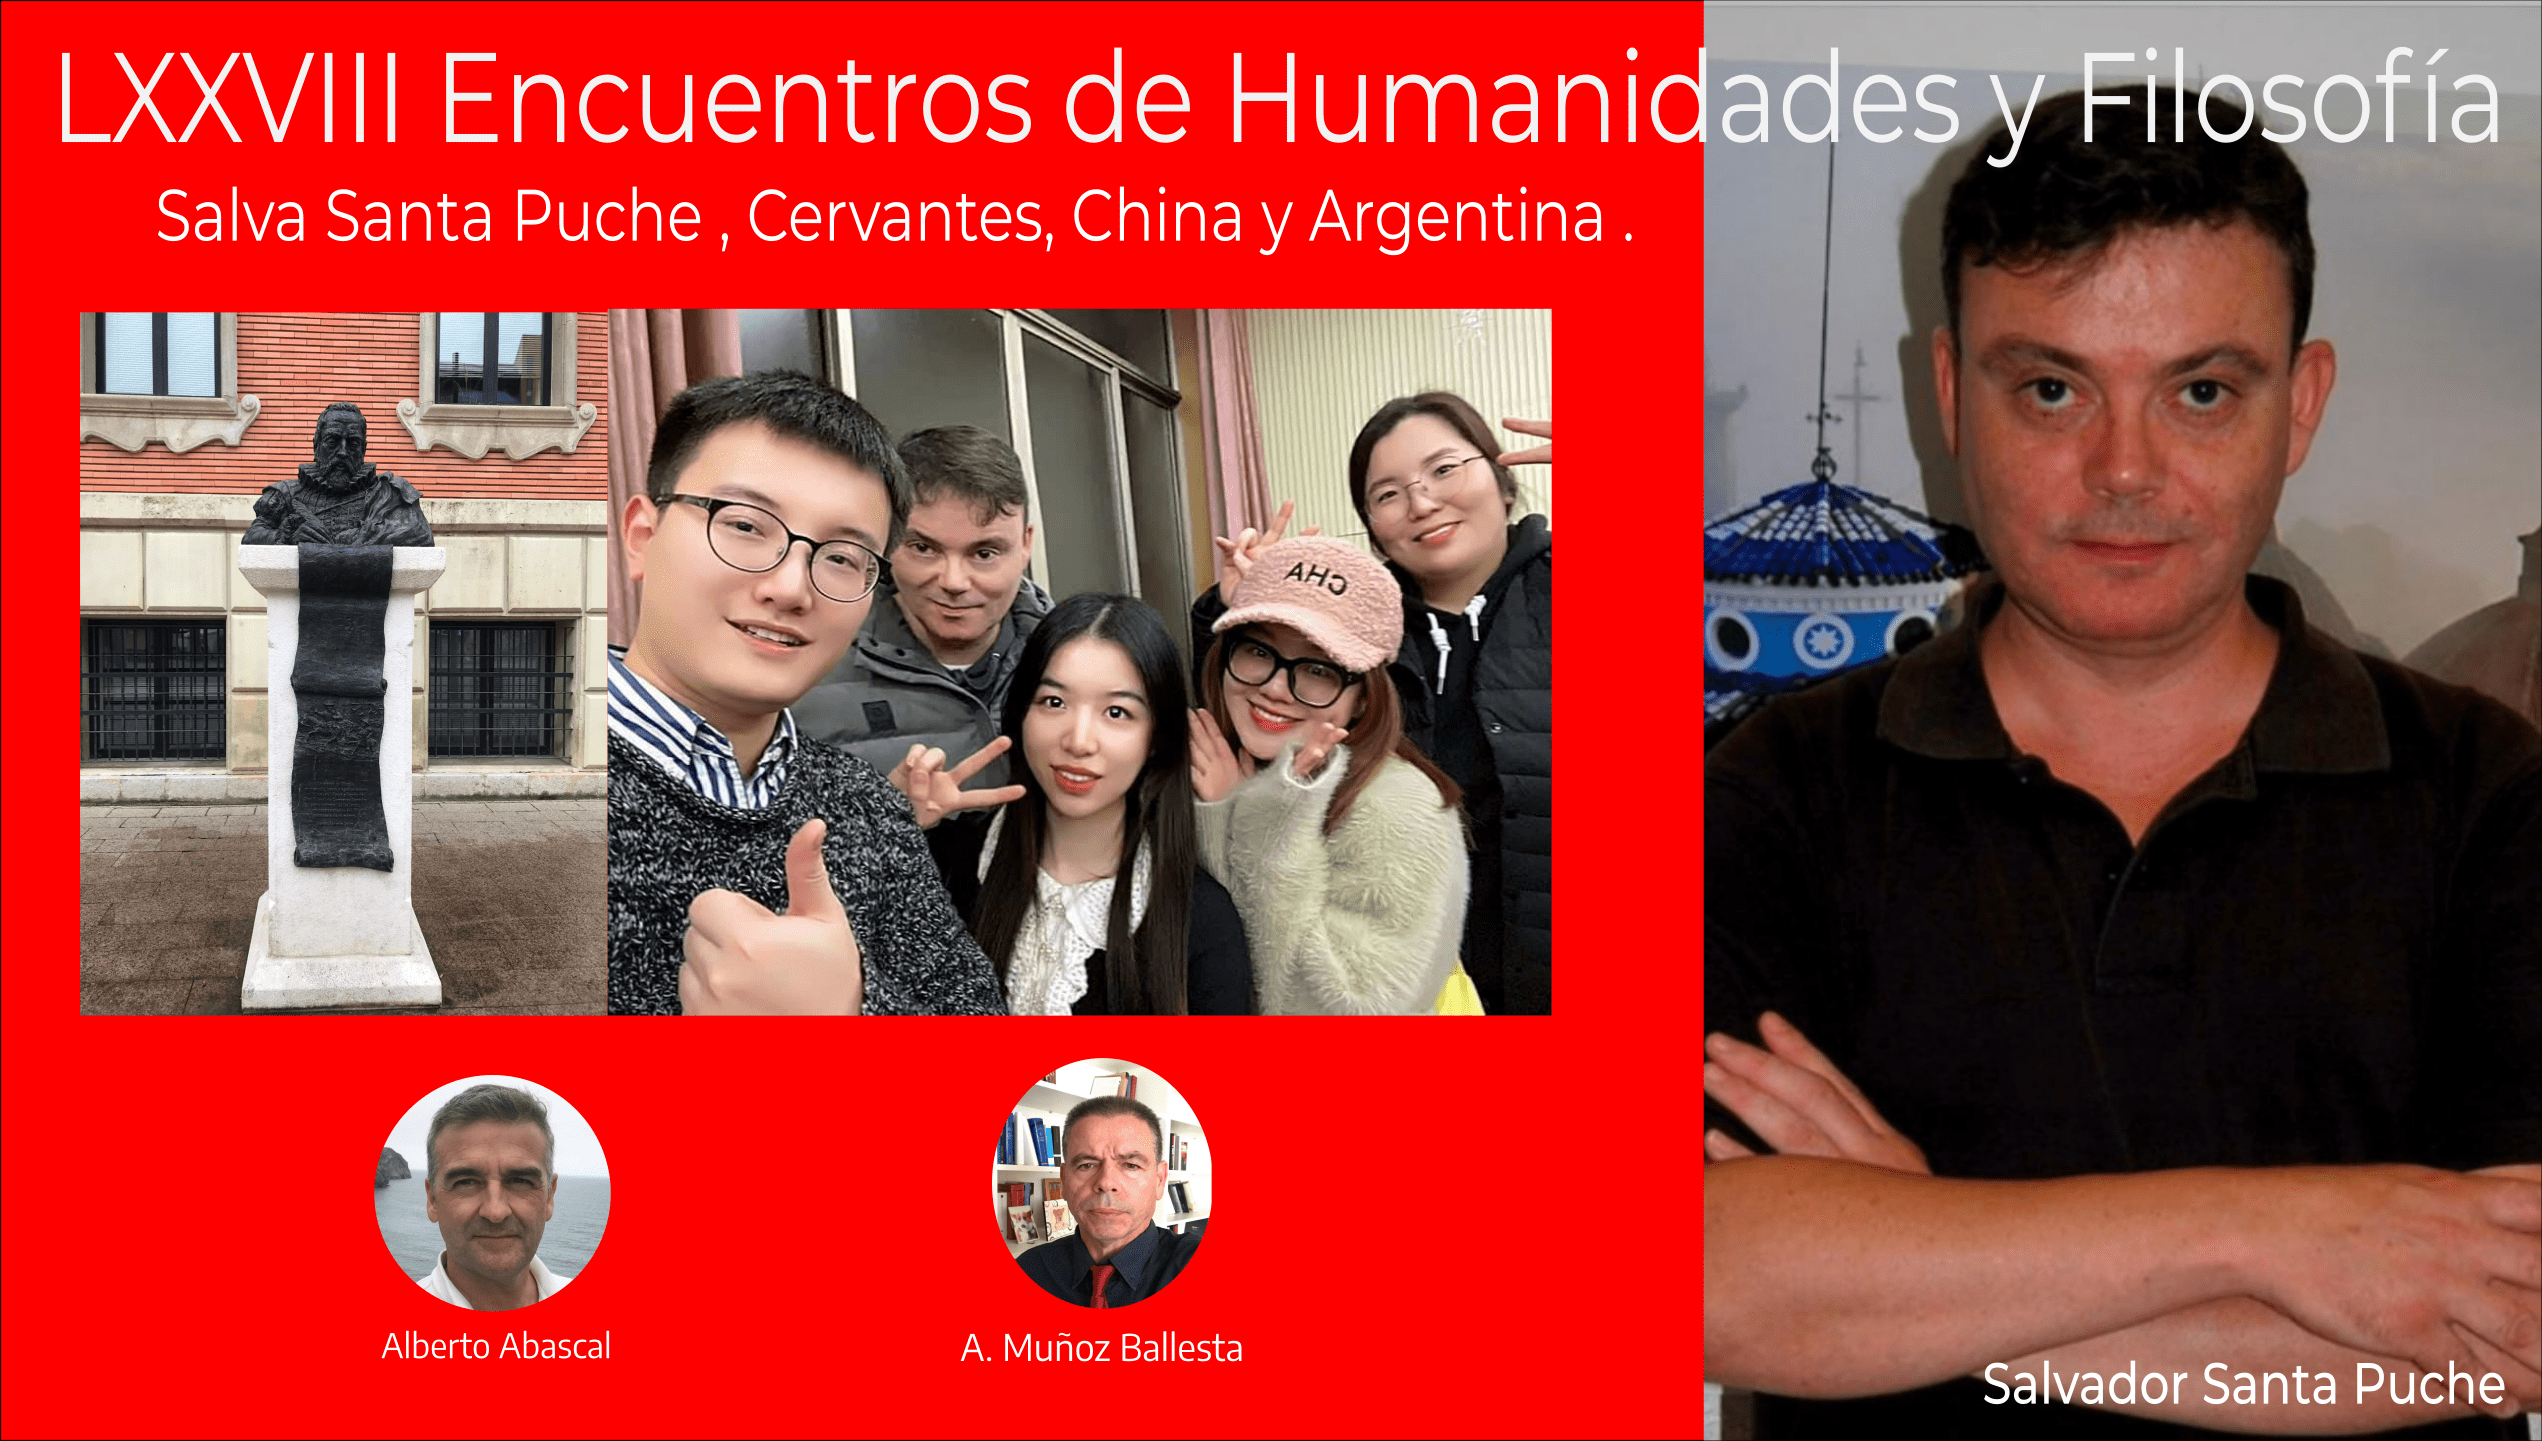 LXXVIII Encuentros Humanidades y Filosofía, Salva Santa Puche , Cervantes, China y Argentina.